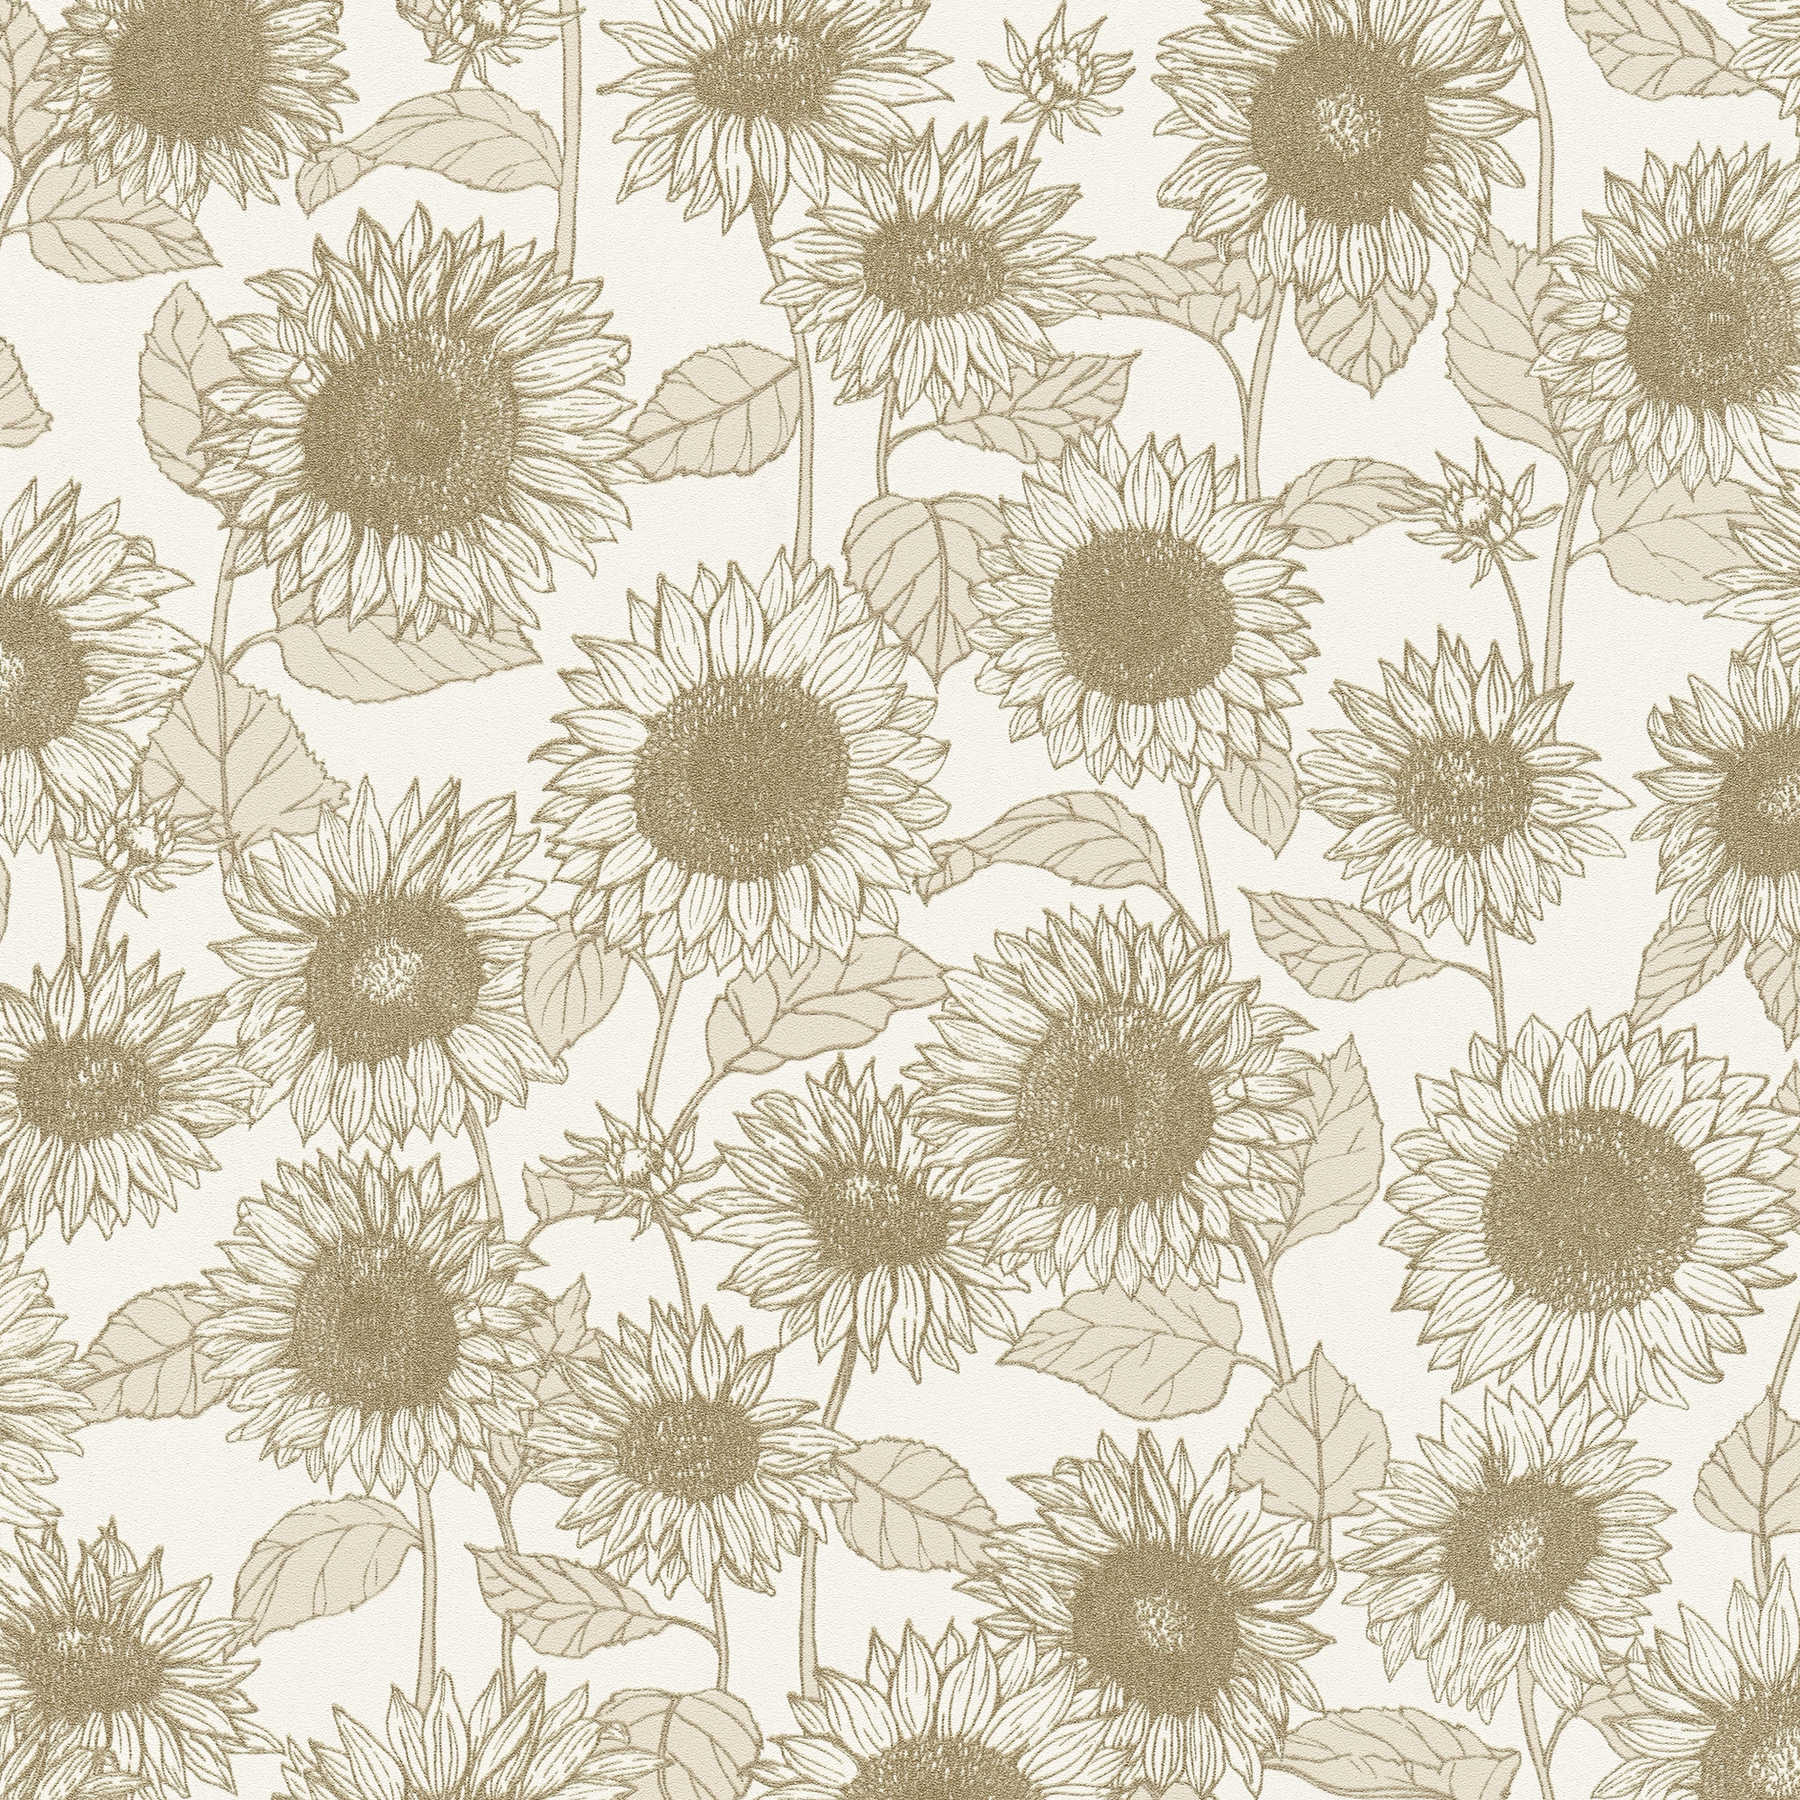 Carta da parati girasoli con effetto metallico - beige, bianco
